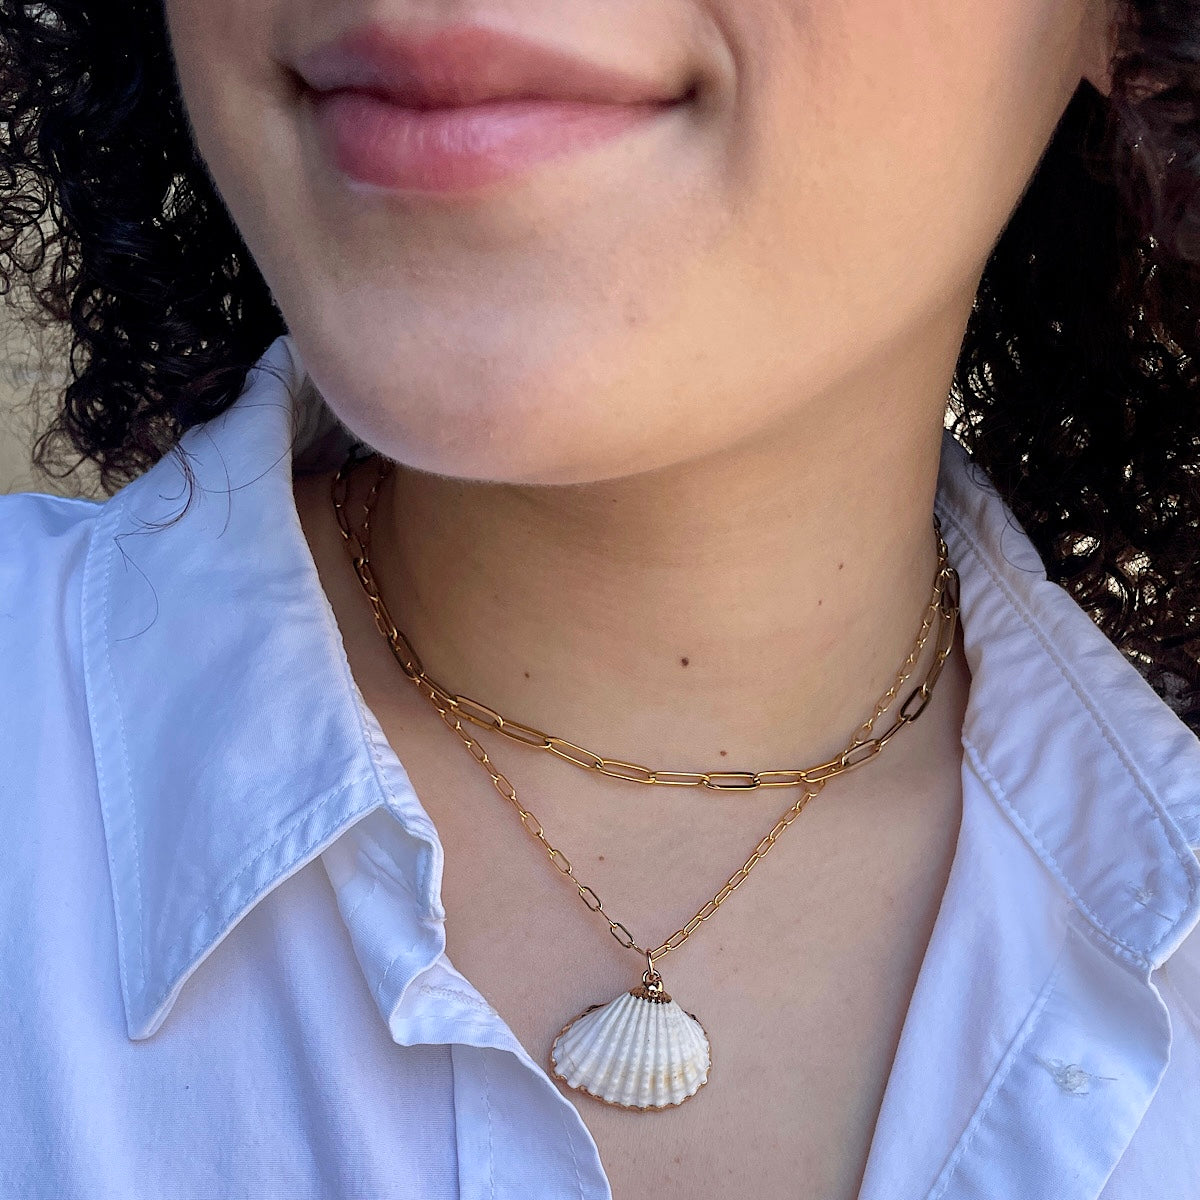 She Sells Seashells Necklace